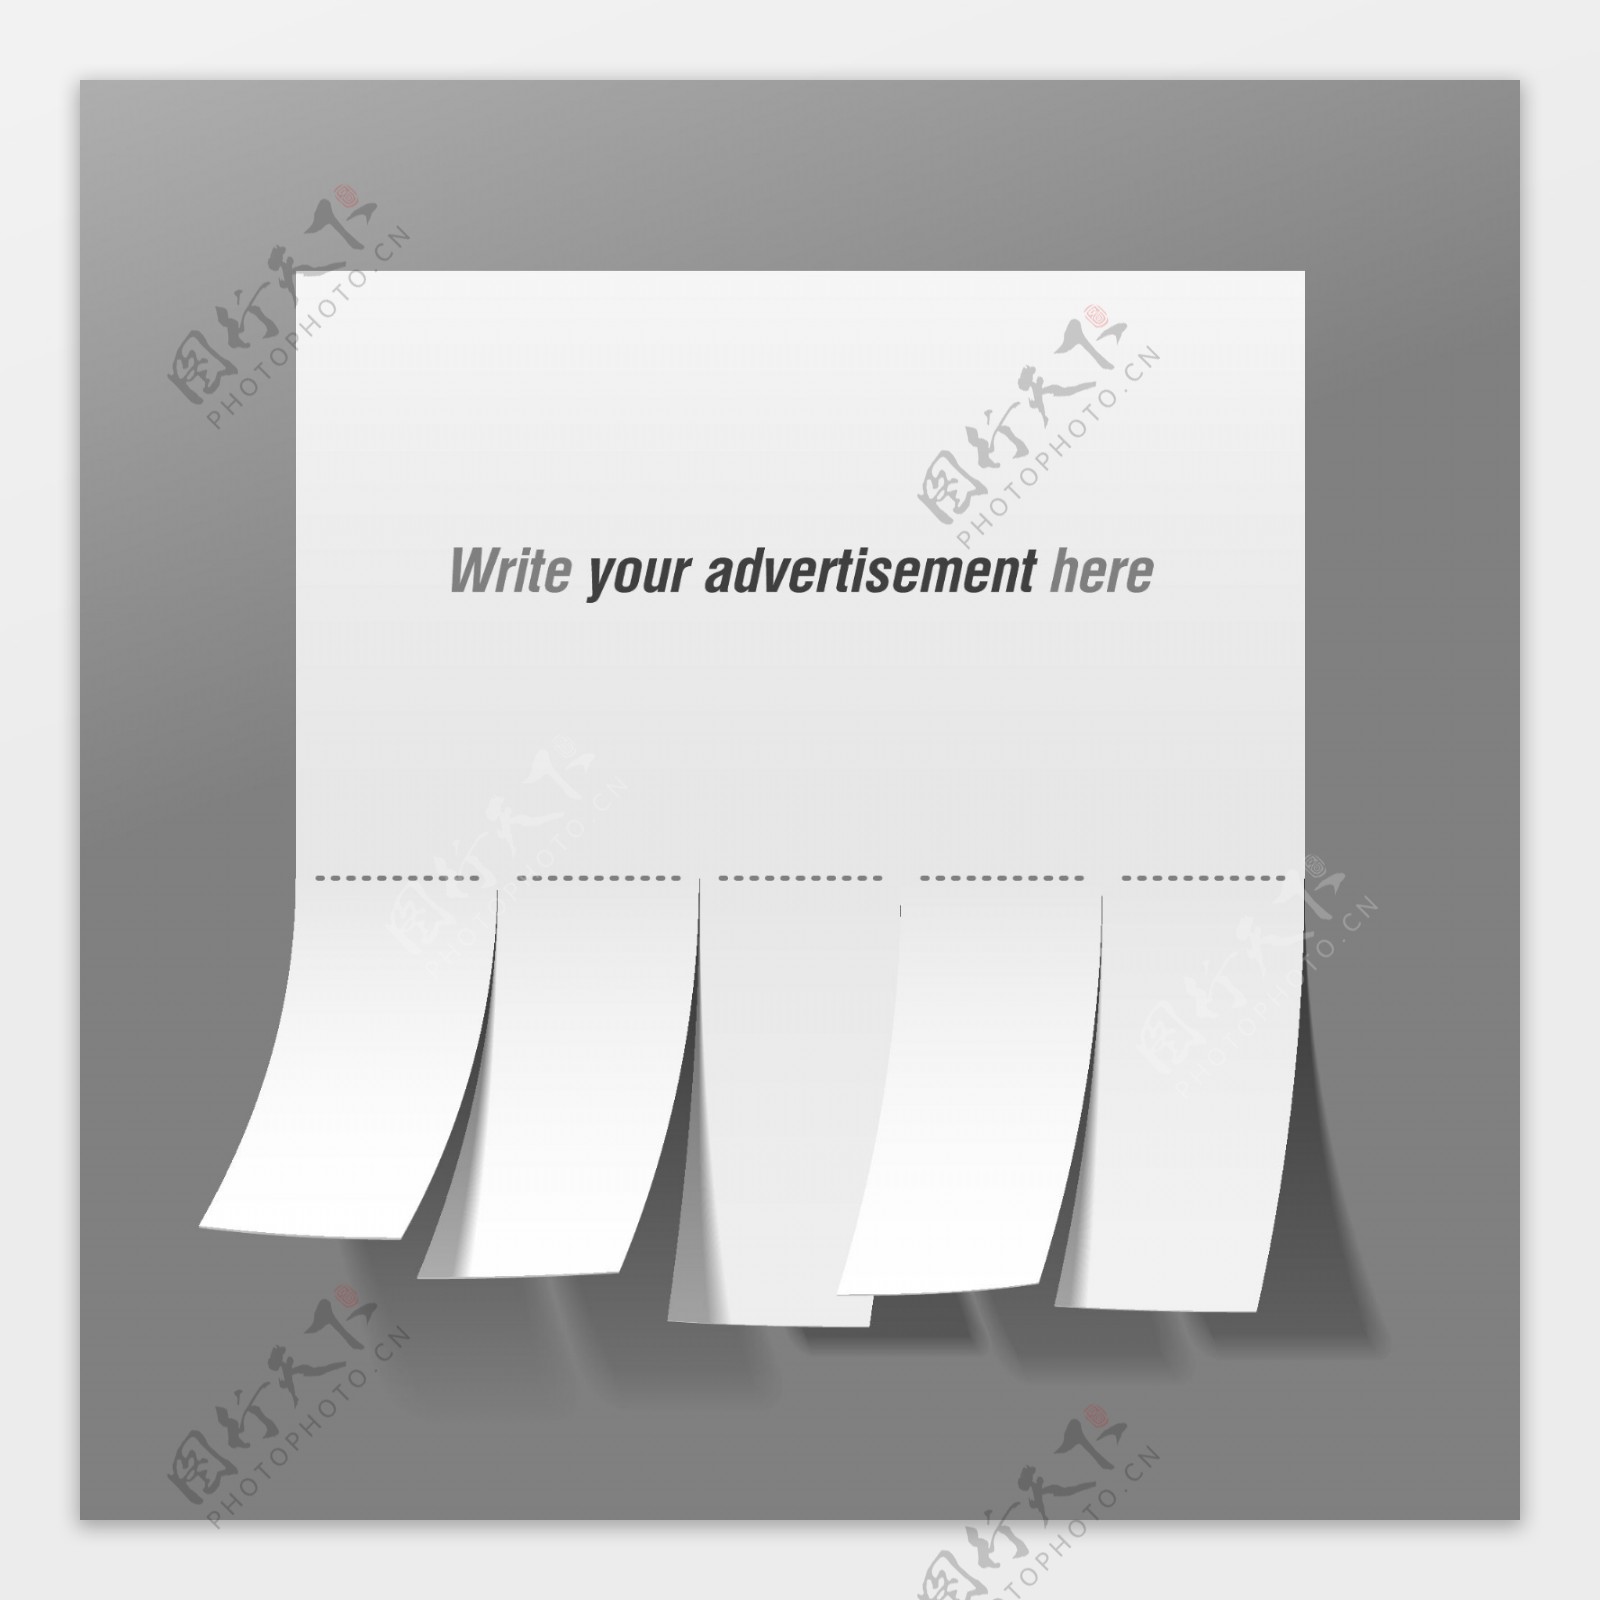 一个方便的广告纸模板矢量素材01